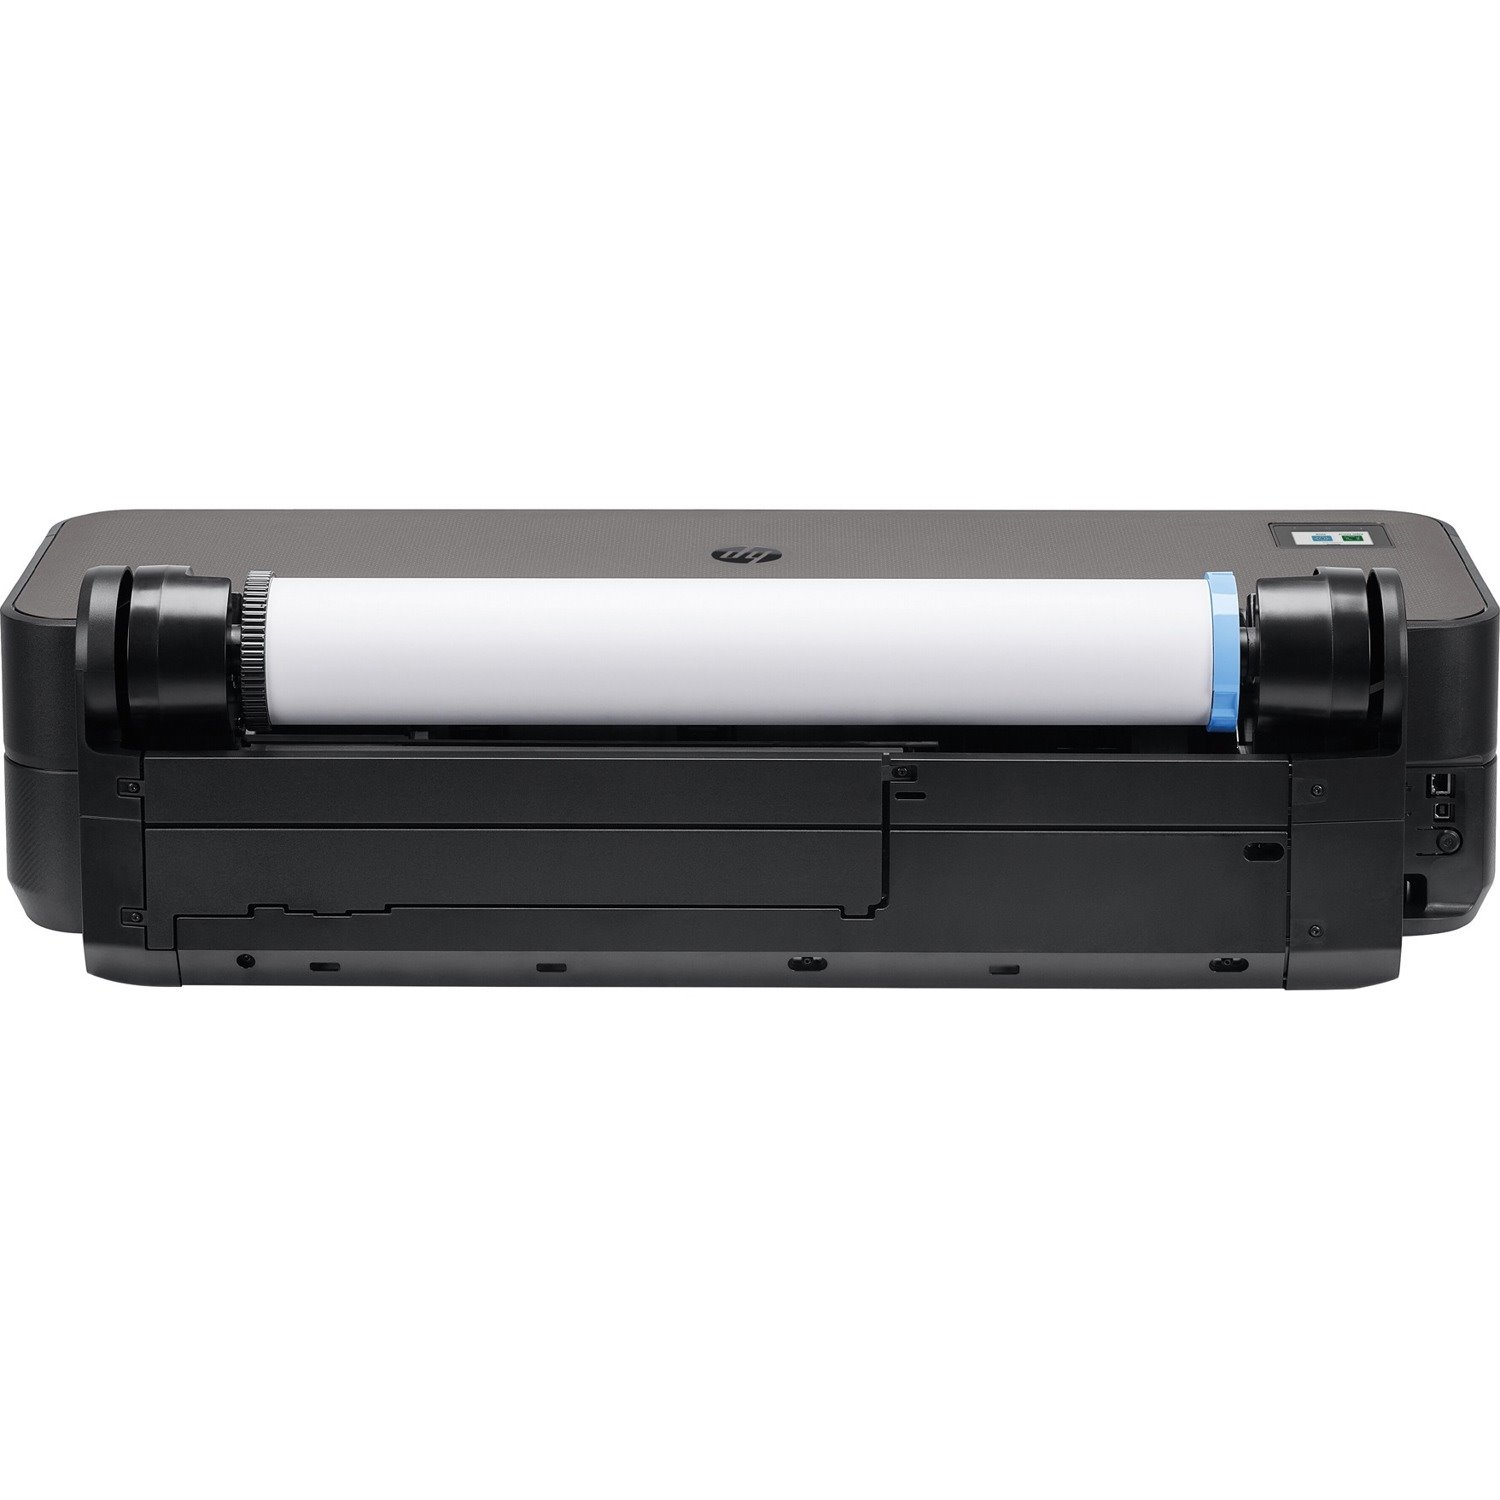 HP Designjet T230 Inkjet Large Format Printer - 24.02" Print Width - Color